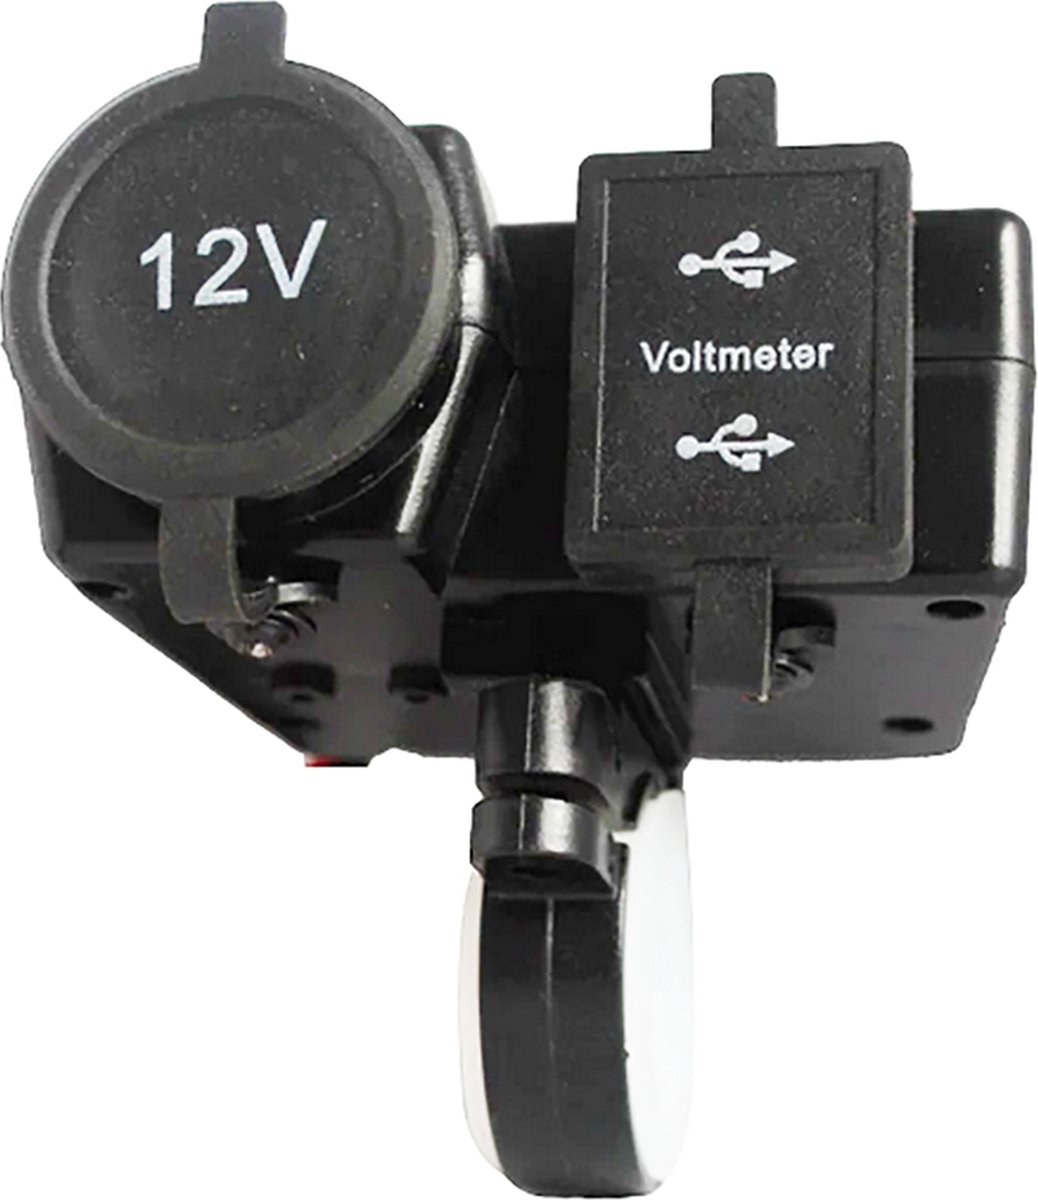 Motorfiets aansluiting voor 12V (sigaret + USB) met voltmeter / Universeel aan te sluiten / HaverCo - HaverCo